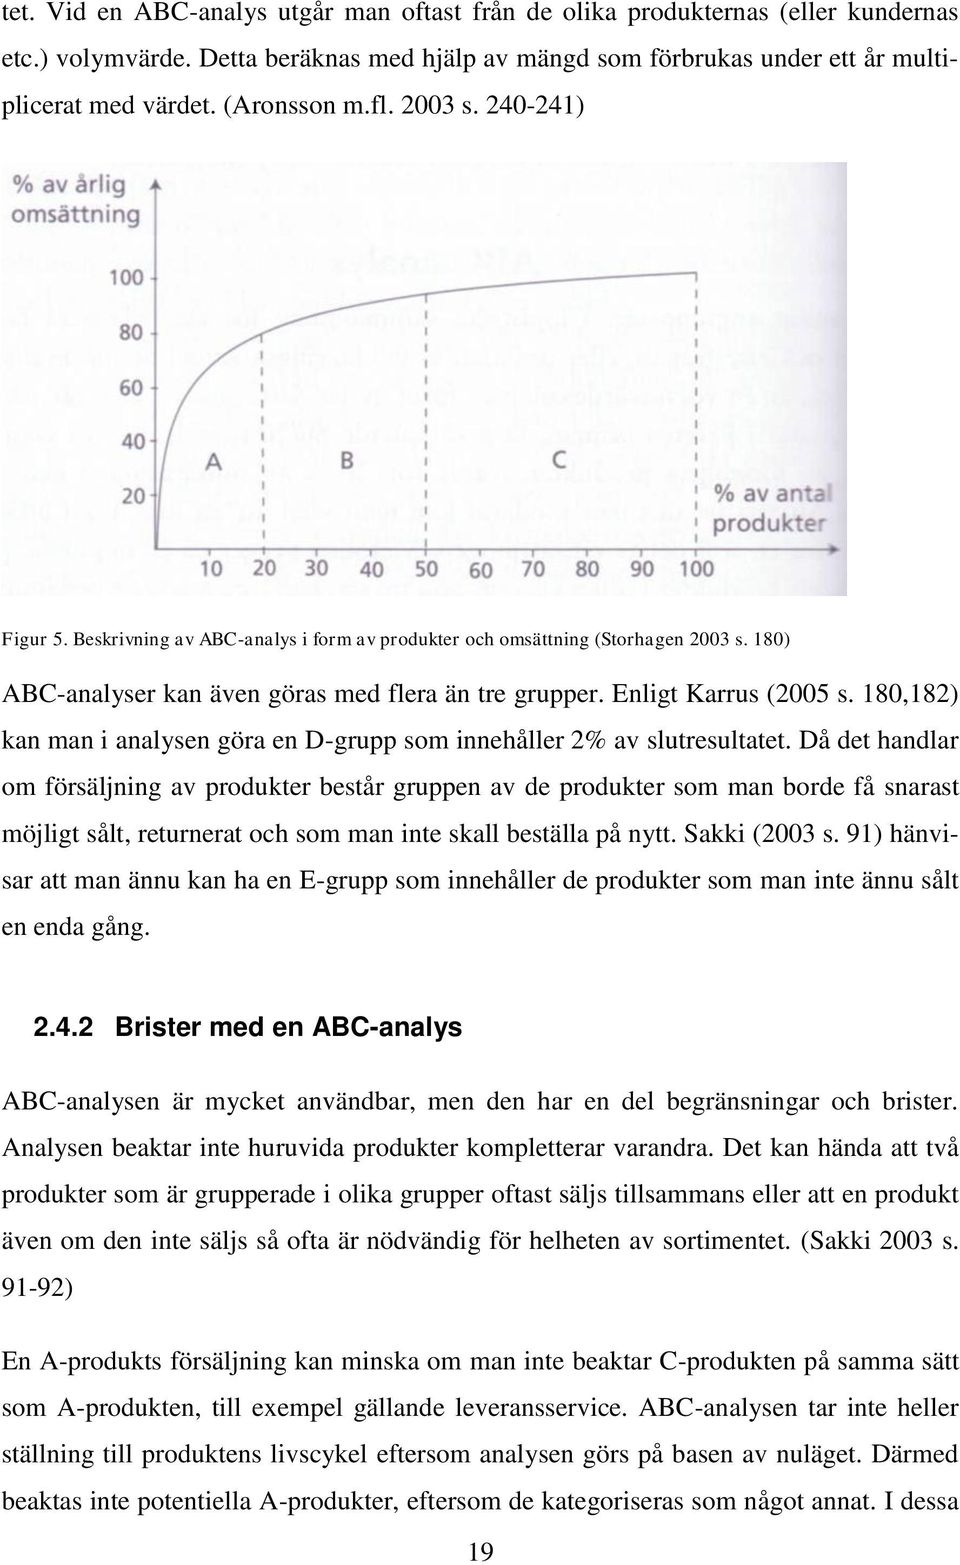 Enligt Karrus (2005 s. 180,182) kan man i analysen göra en D-grupp som innehåller 2% av slutresultatet.